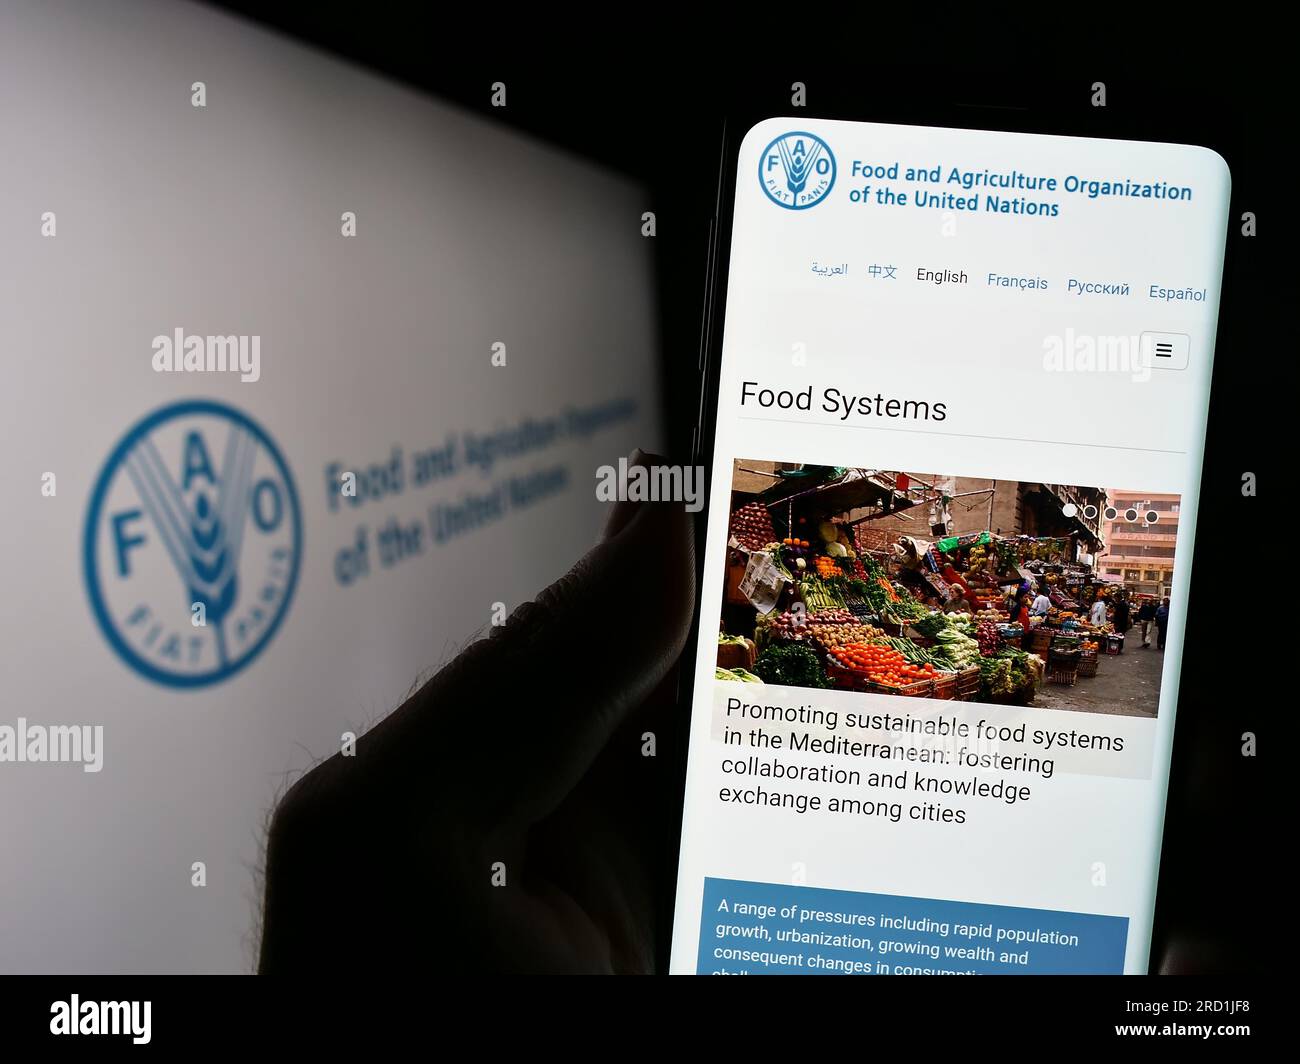 Personne tenant un téléphone portable avec le site Web de l'Organisation des Nations Unies pour l'alimentation et l'agriculture (FAO) à l'écran avec logo. Concentrez-vous sur le centre de l'écran du téléphone. Banque D'Images